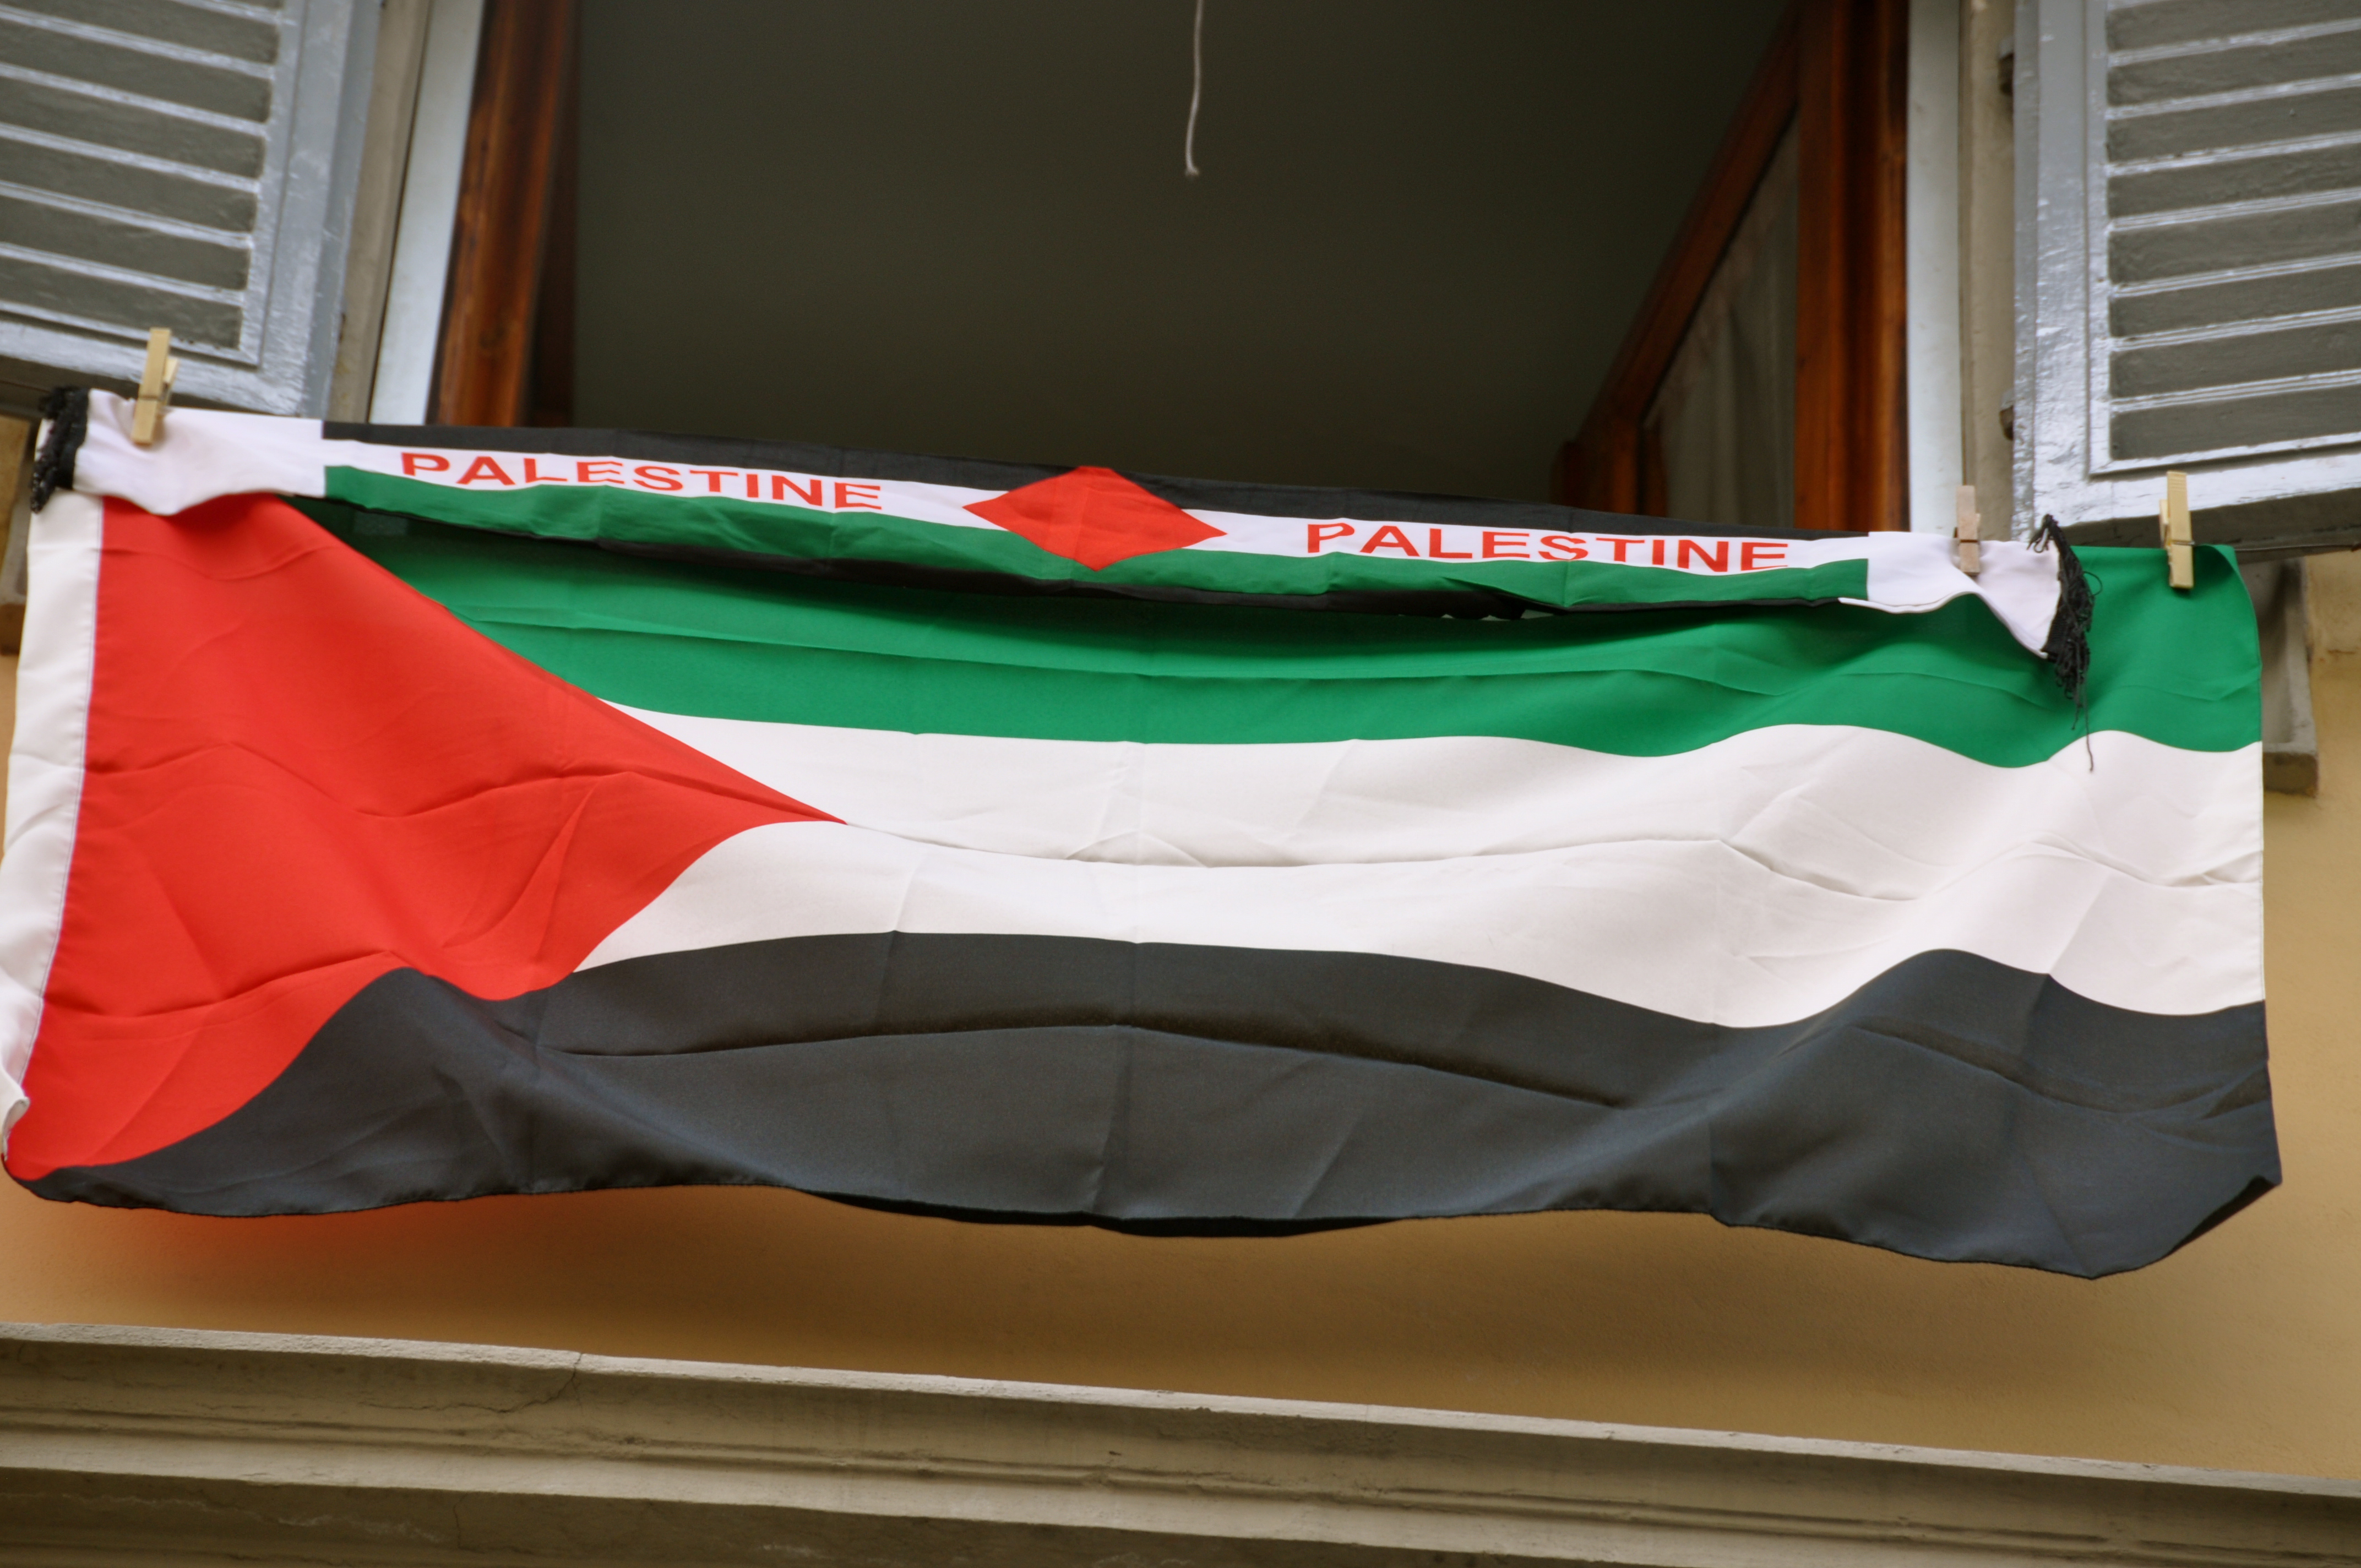 Appendi una bandiera palestinese alla tua finestra